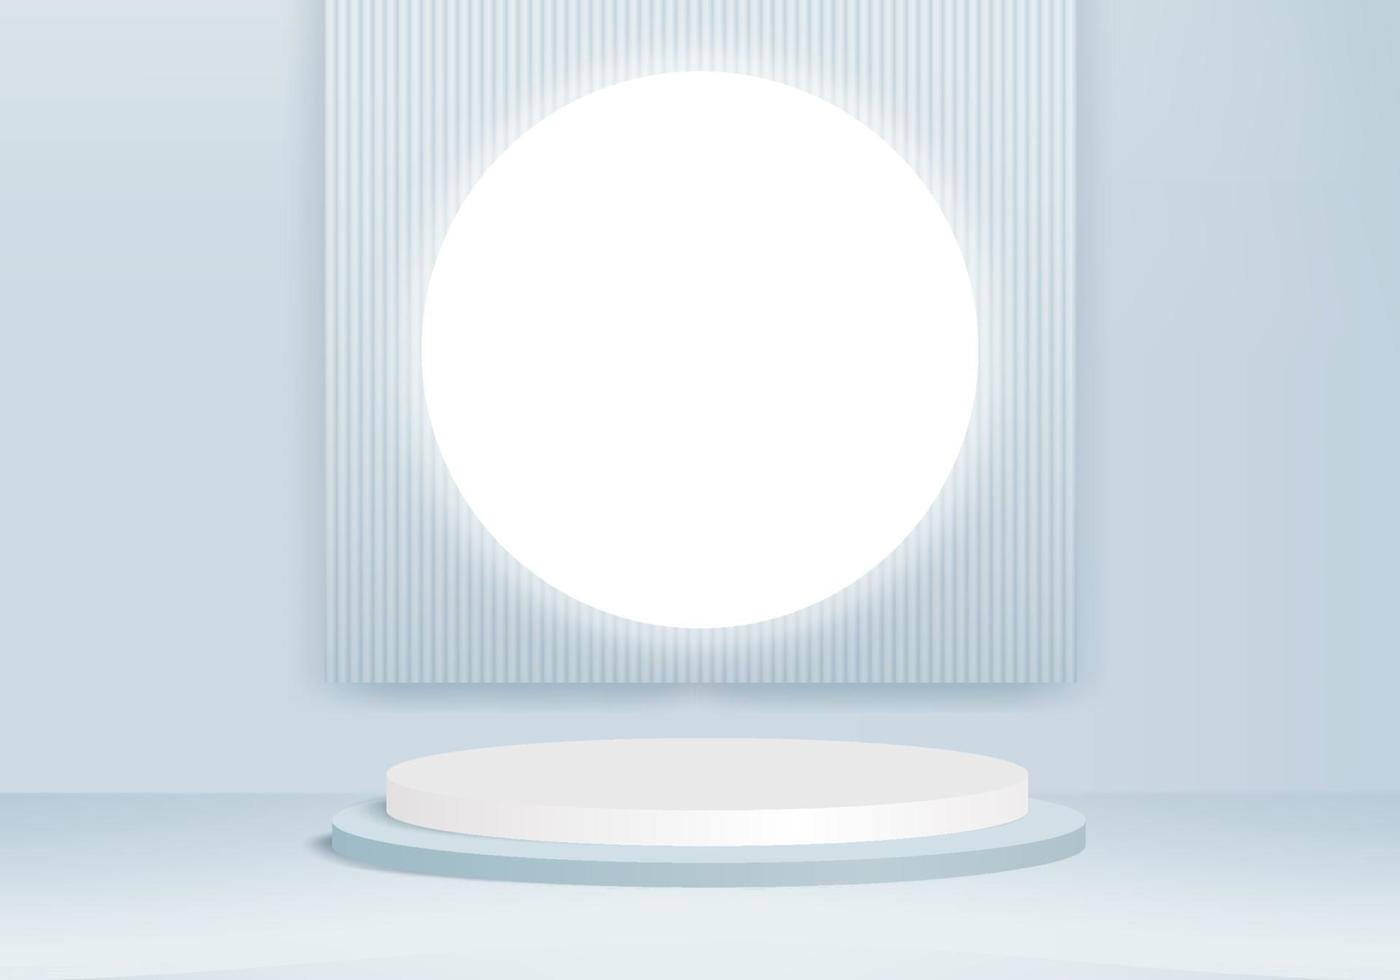 plataforma de fundo moderno com com vidro azul vetor de fundo moderno renderização em 3d plataforma de pódio de cristal estande show de produto cosmético vitrine em plataforma de estúdio moderno 3d de pedestal